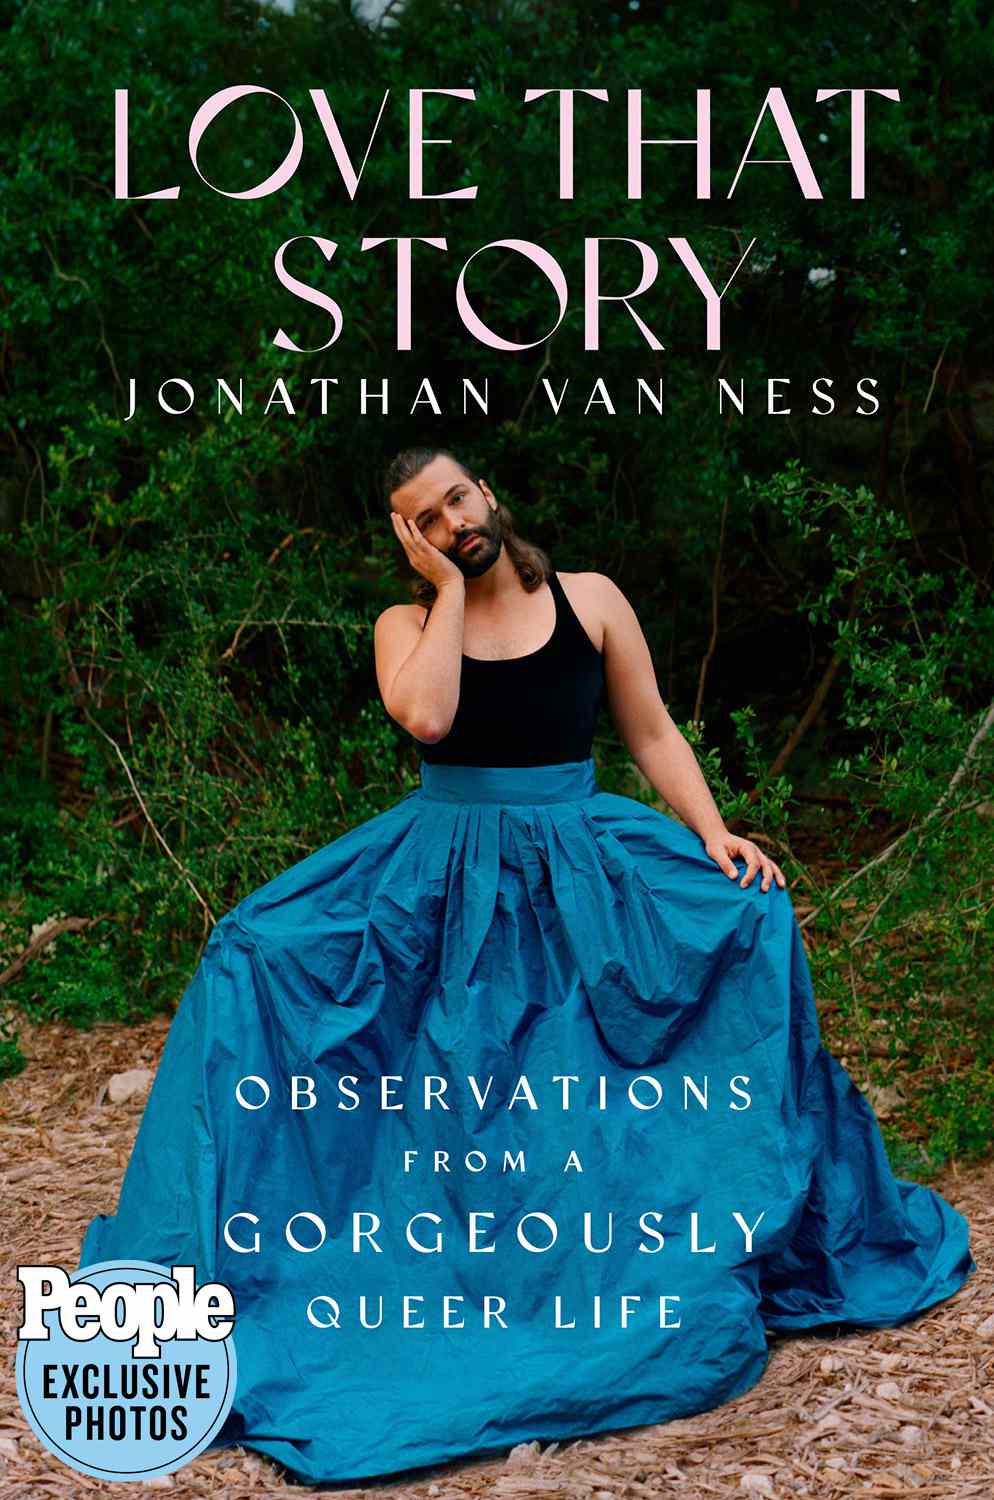 Jonathan Van Ness Mengatakan 'Tidak Ada Yang Terlarang' di Buku Baru Love That Story — Lihat Sampulnya